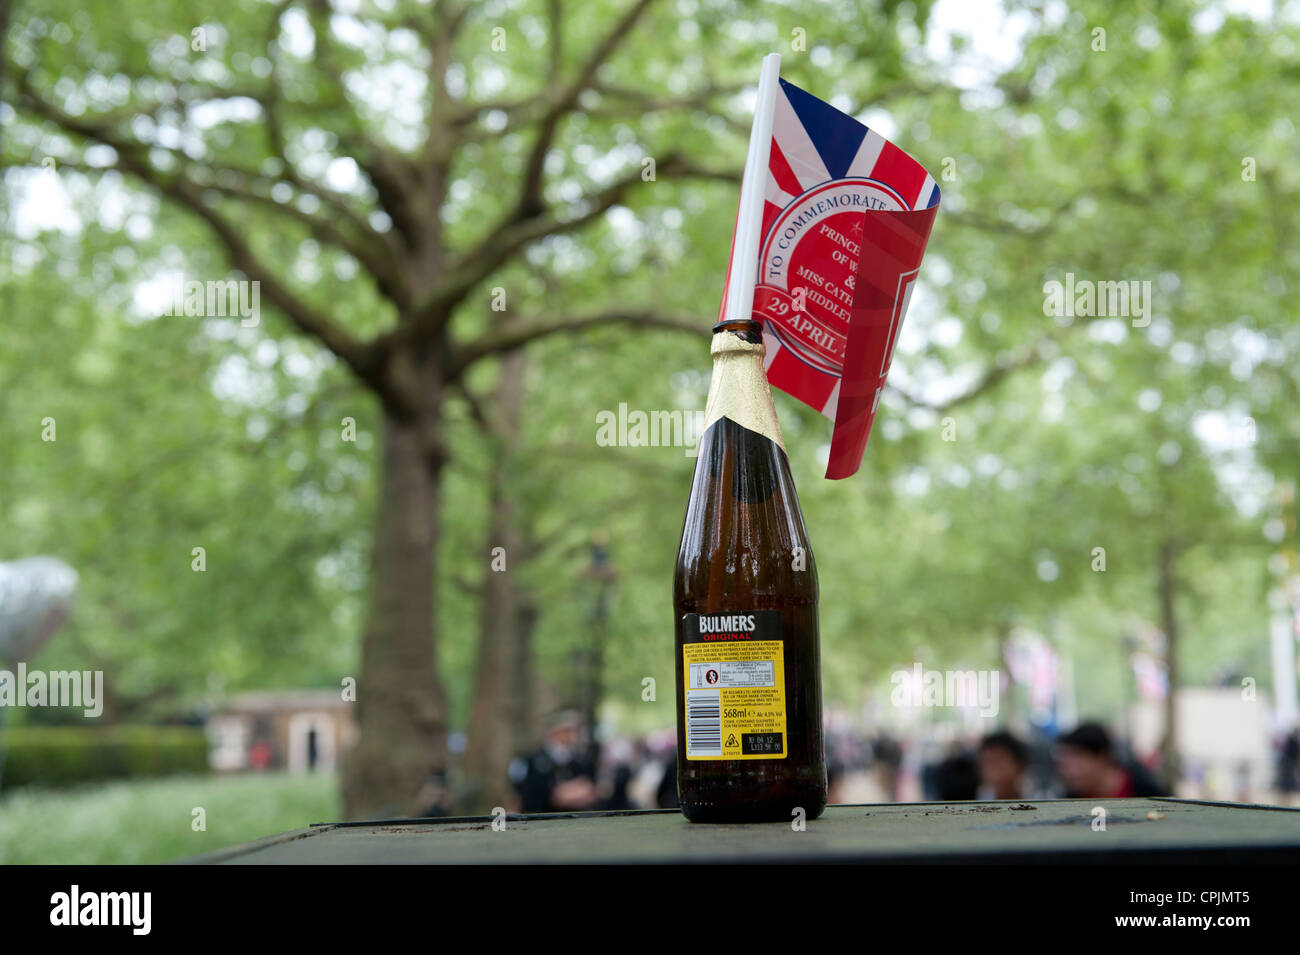 Union Jack flag in bottiglia di sidro in occasione delle nozze del principe William a Catherine Middleton. Londra, Inghilterra Foto Stock